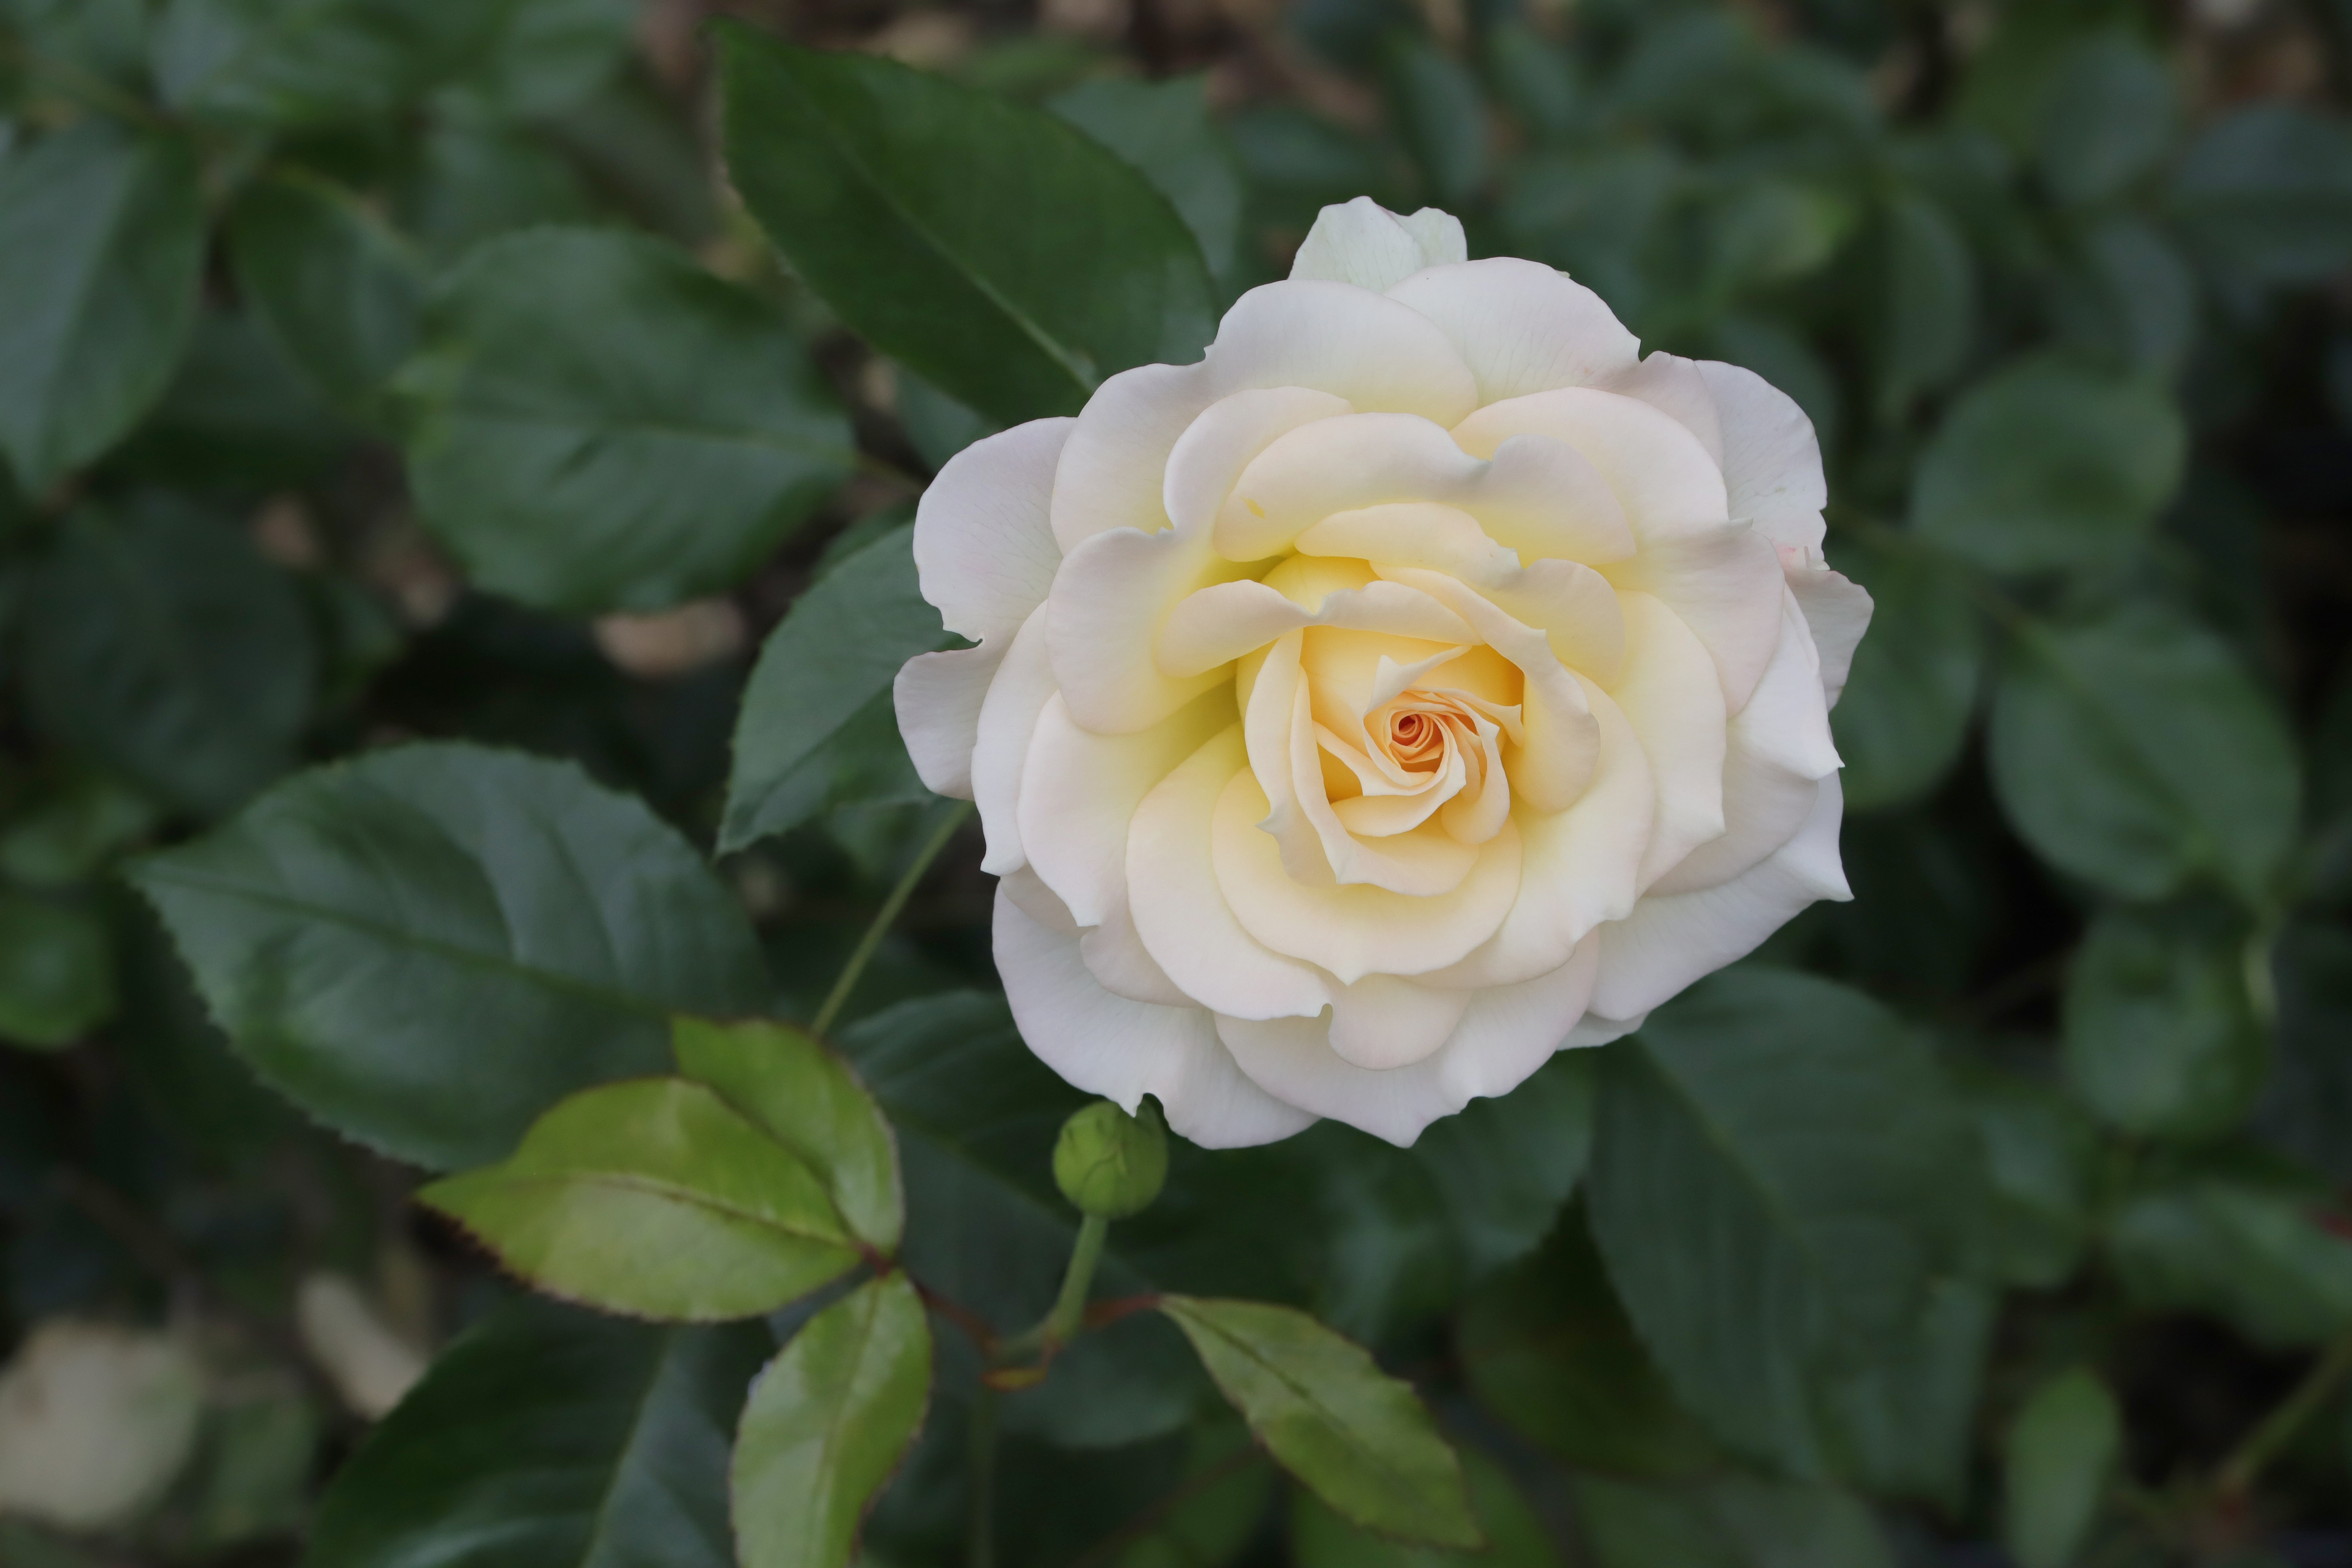 Скачать обои бесплатно Роза, Белая Роза, Белый Цветок, Земля/природа картинка на рабочий стол ПК